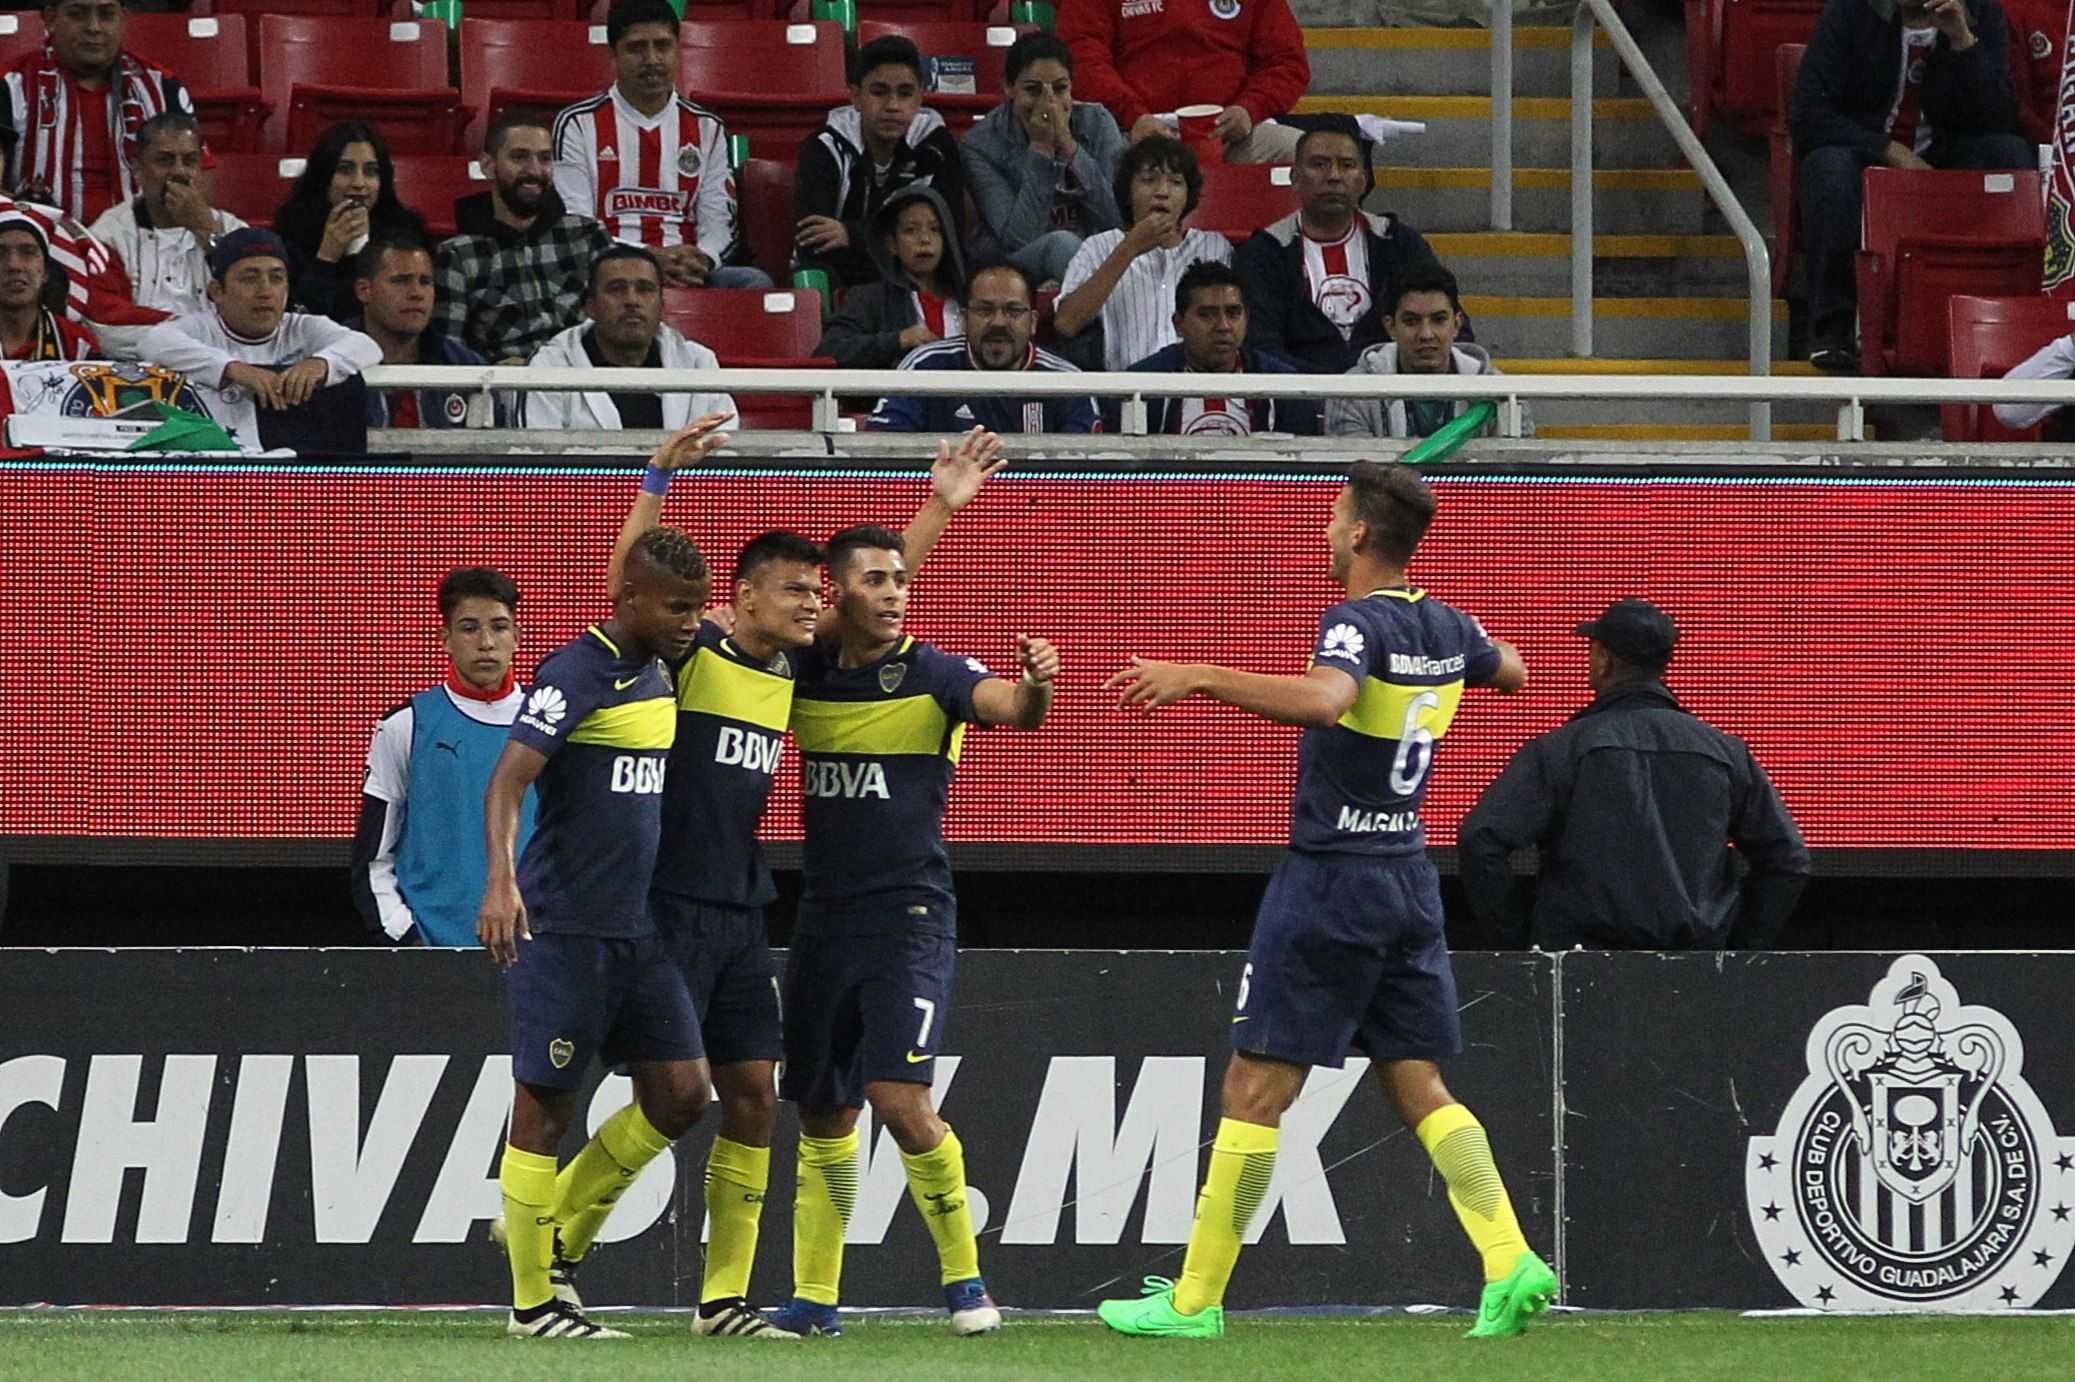 Dos audios revelan presiones de Boca Juniors a los árbitros